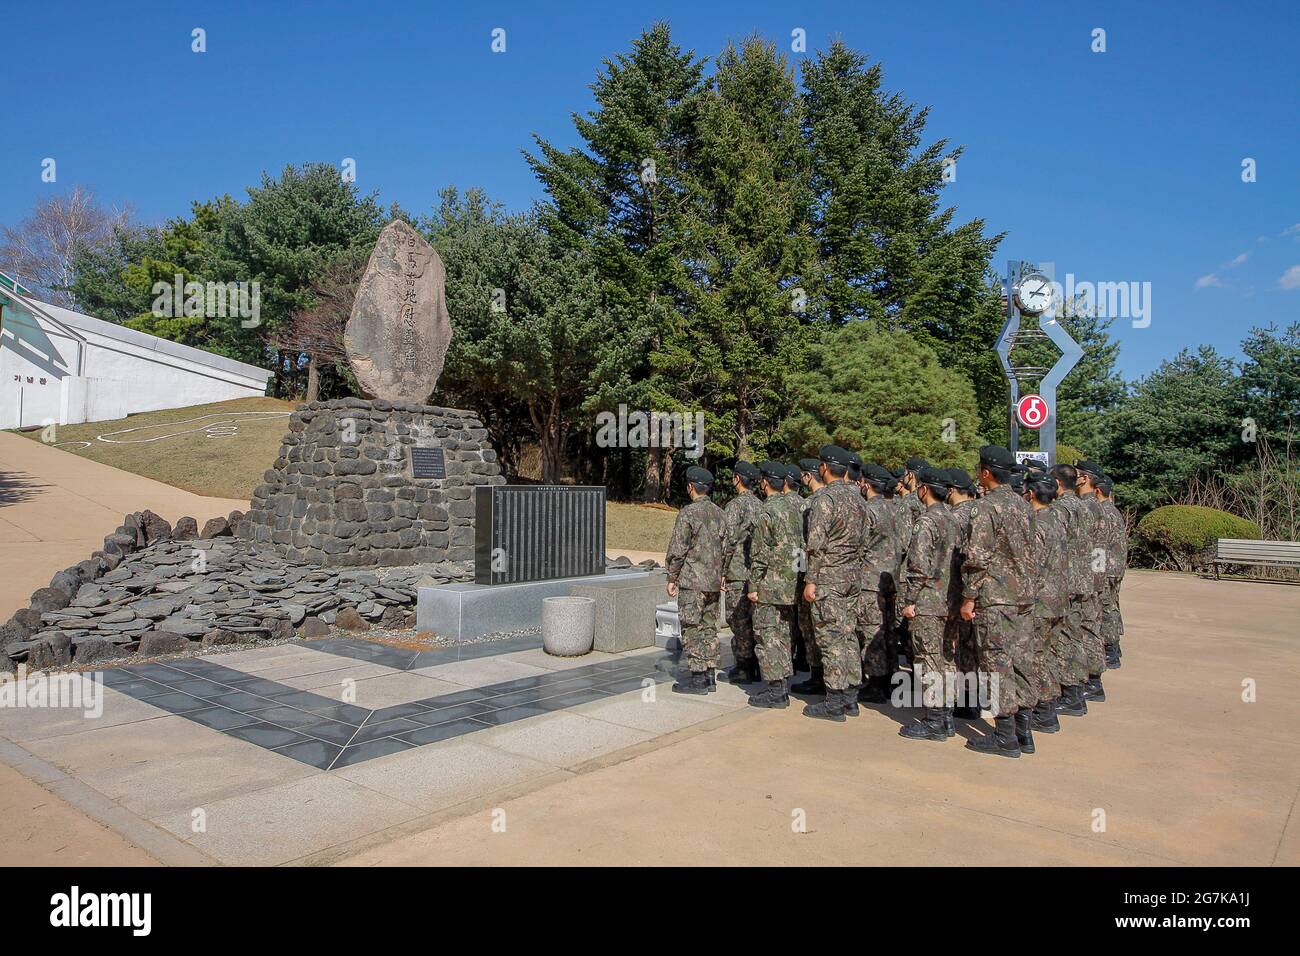 11 de abril de 2018-Goyang, Corea del Sur-soldados del Ejército de Corea del Sur visitan la batalla del monumento conmemorativo del caballo blanco en Cheorwon, Corea del Sur. La batalla del caballo blanco fue otra en una serie de sangrientas batallas por posiciones dominantes en la cima de la colina durante la guerra de Corea. Baengma-goji era una colina de 395 metros (1.296 pies) en el Triángulo del Hierro, formada por Pyonggang en su pico y Gimhwa-eup y Cheorwon en su base, era una ruta estratégica de transporte en la región central de la península de Corea. White Horse fue la cresta de una masa boscosa en una colina que se extendió en dirección noroeste-sureste por aproximadamente dos millas Foto de stock